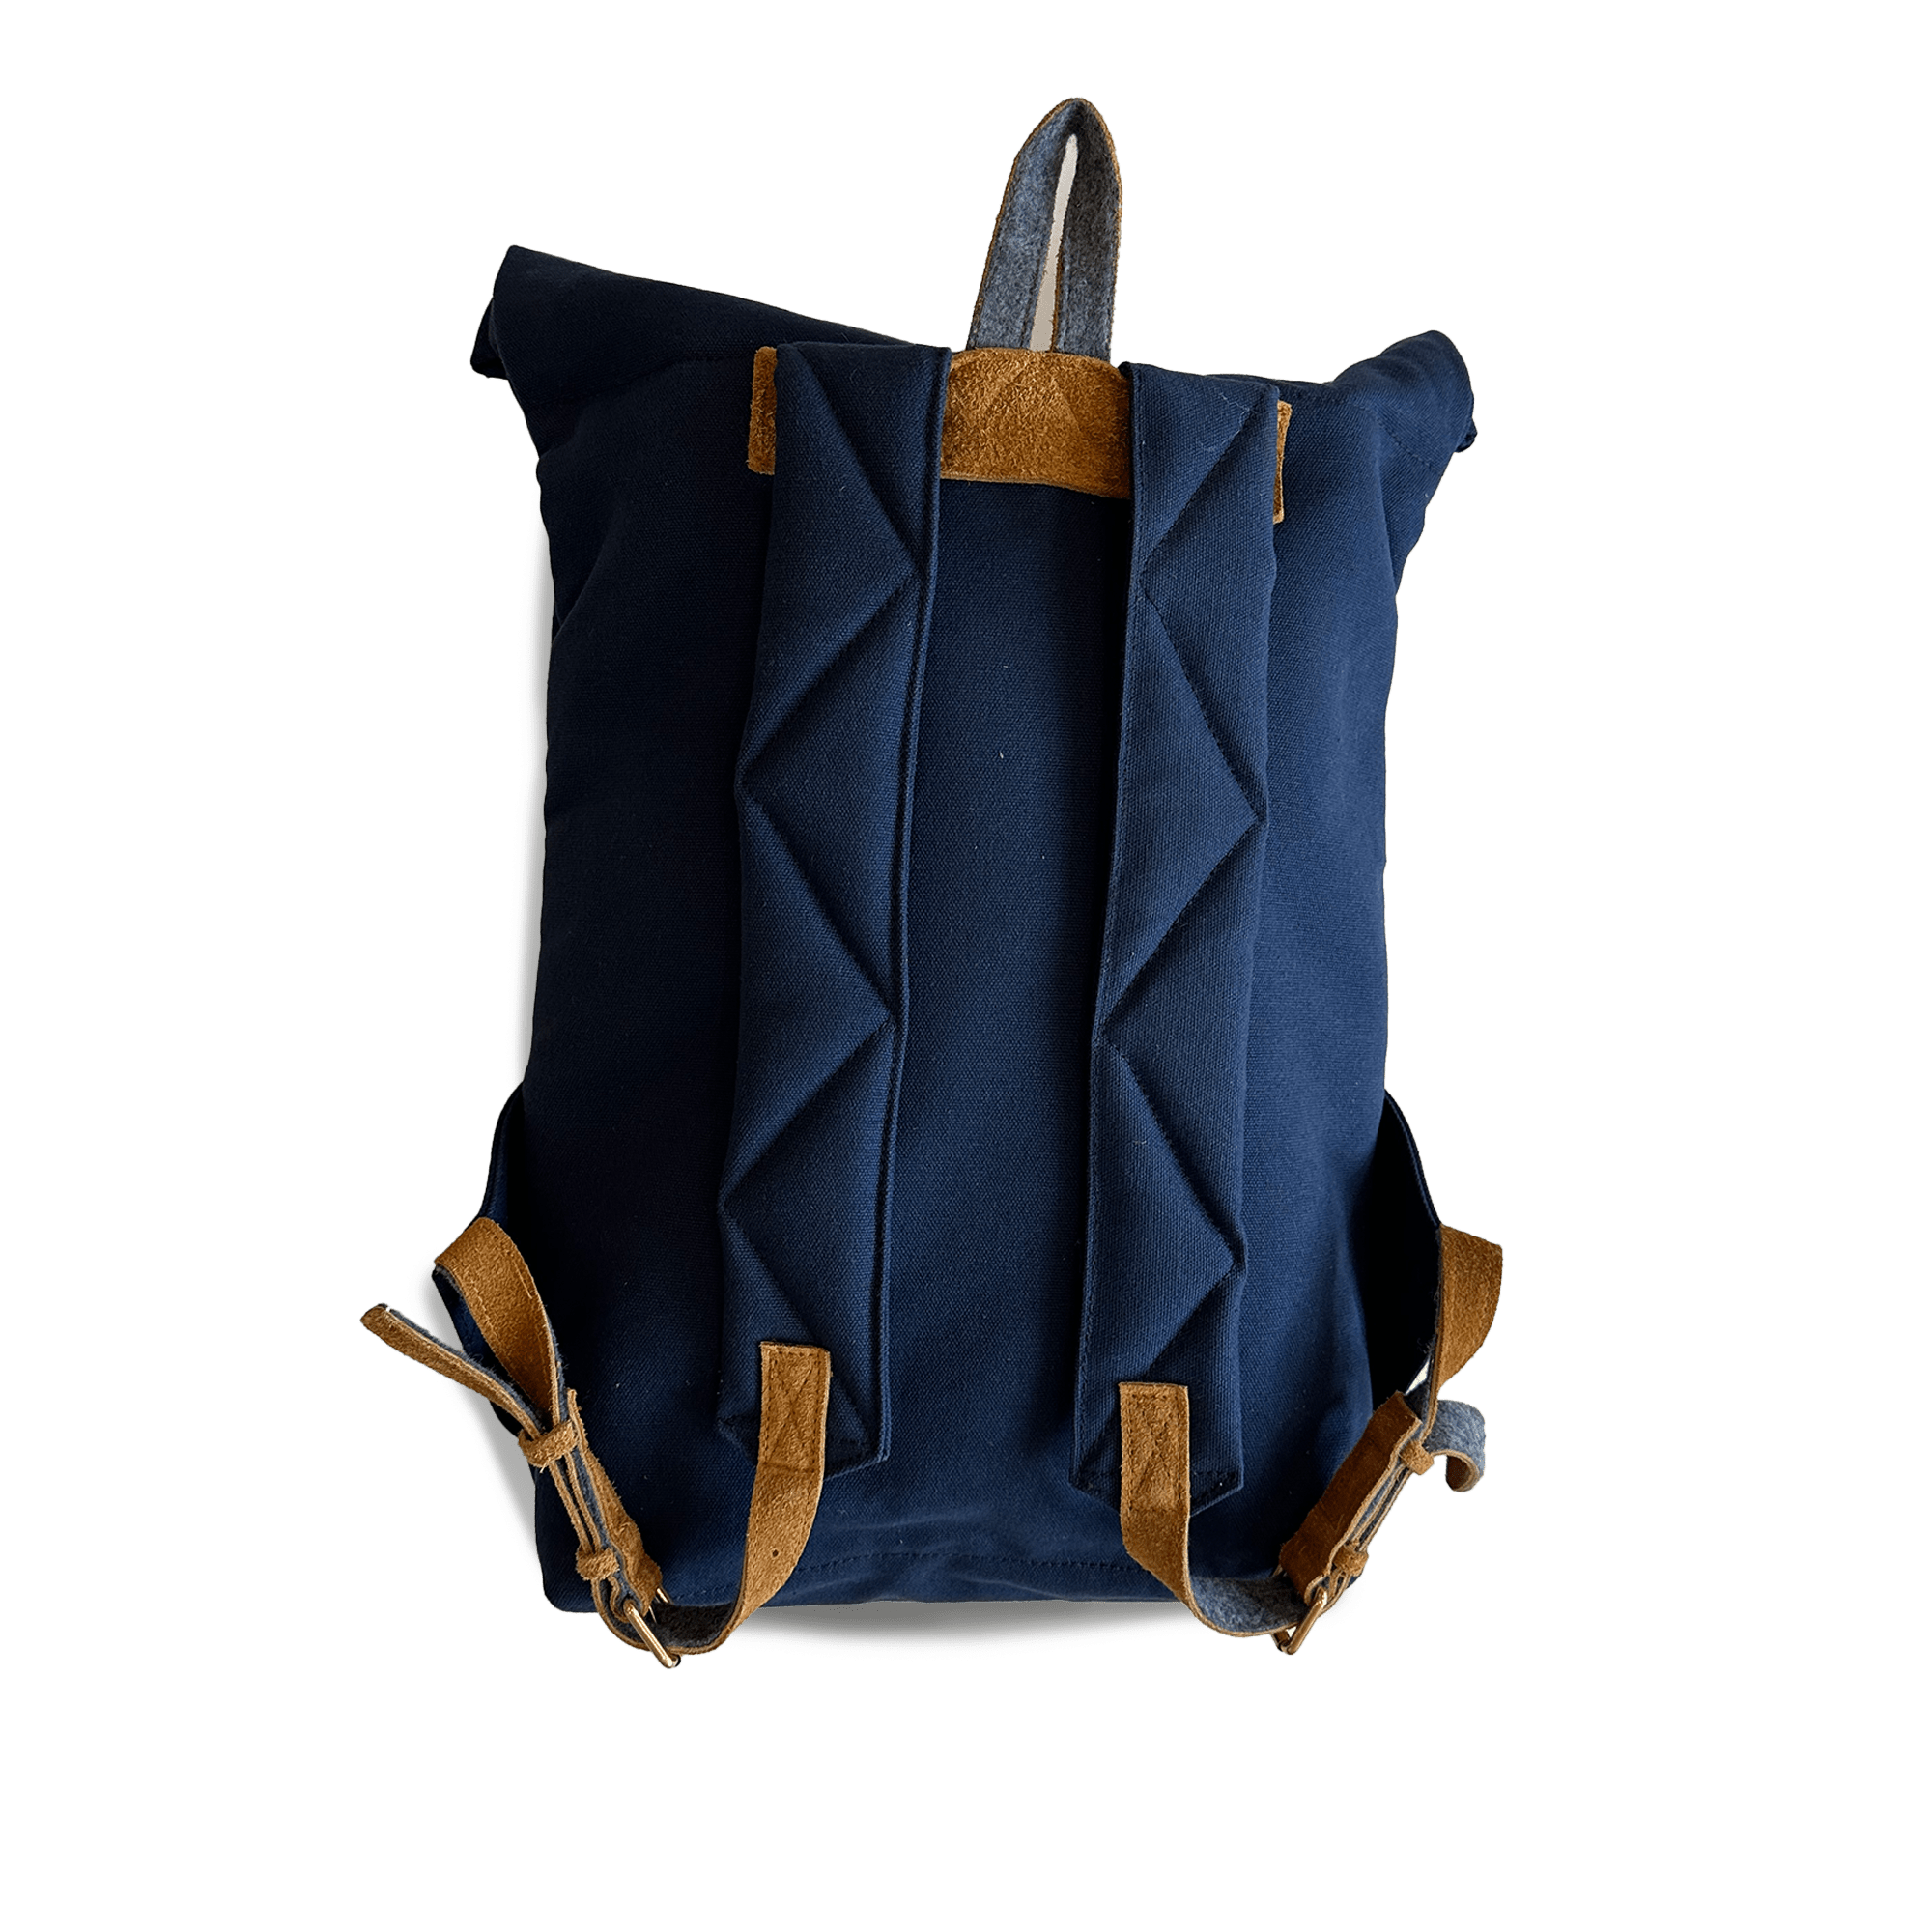 Urban Hiker Backpack - Navy - grown&sewn